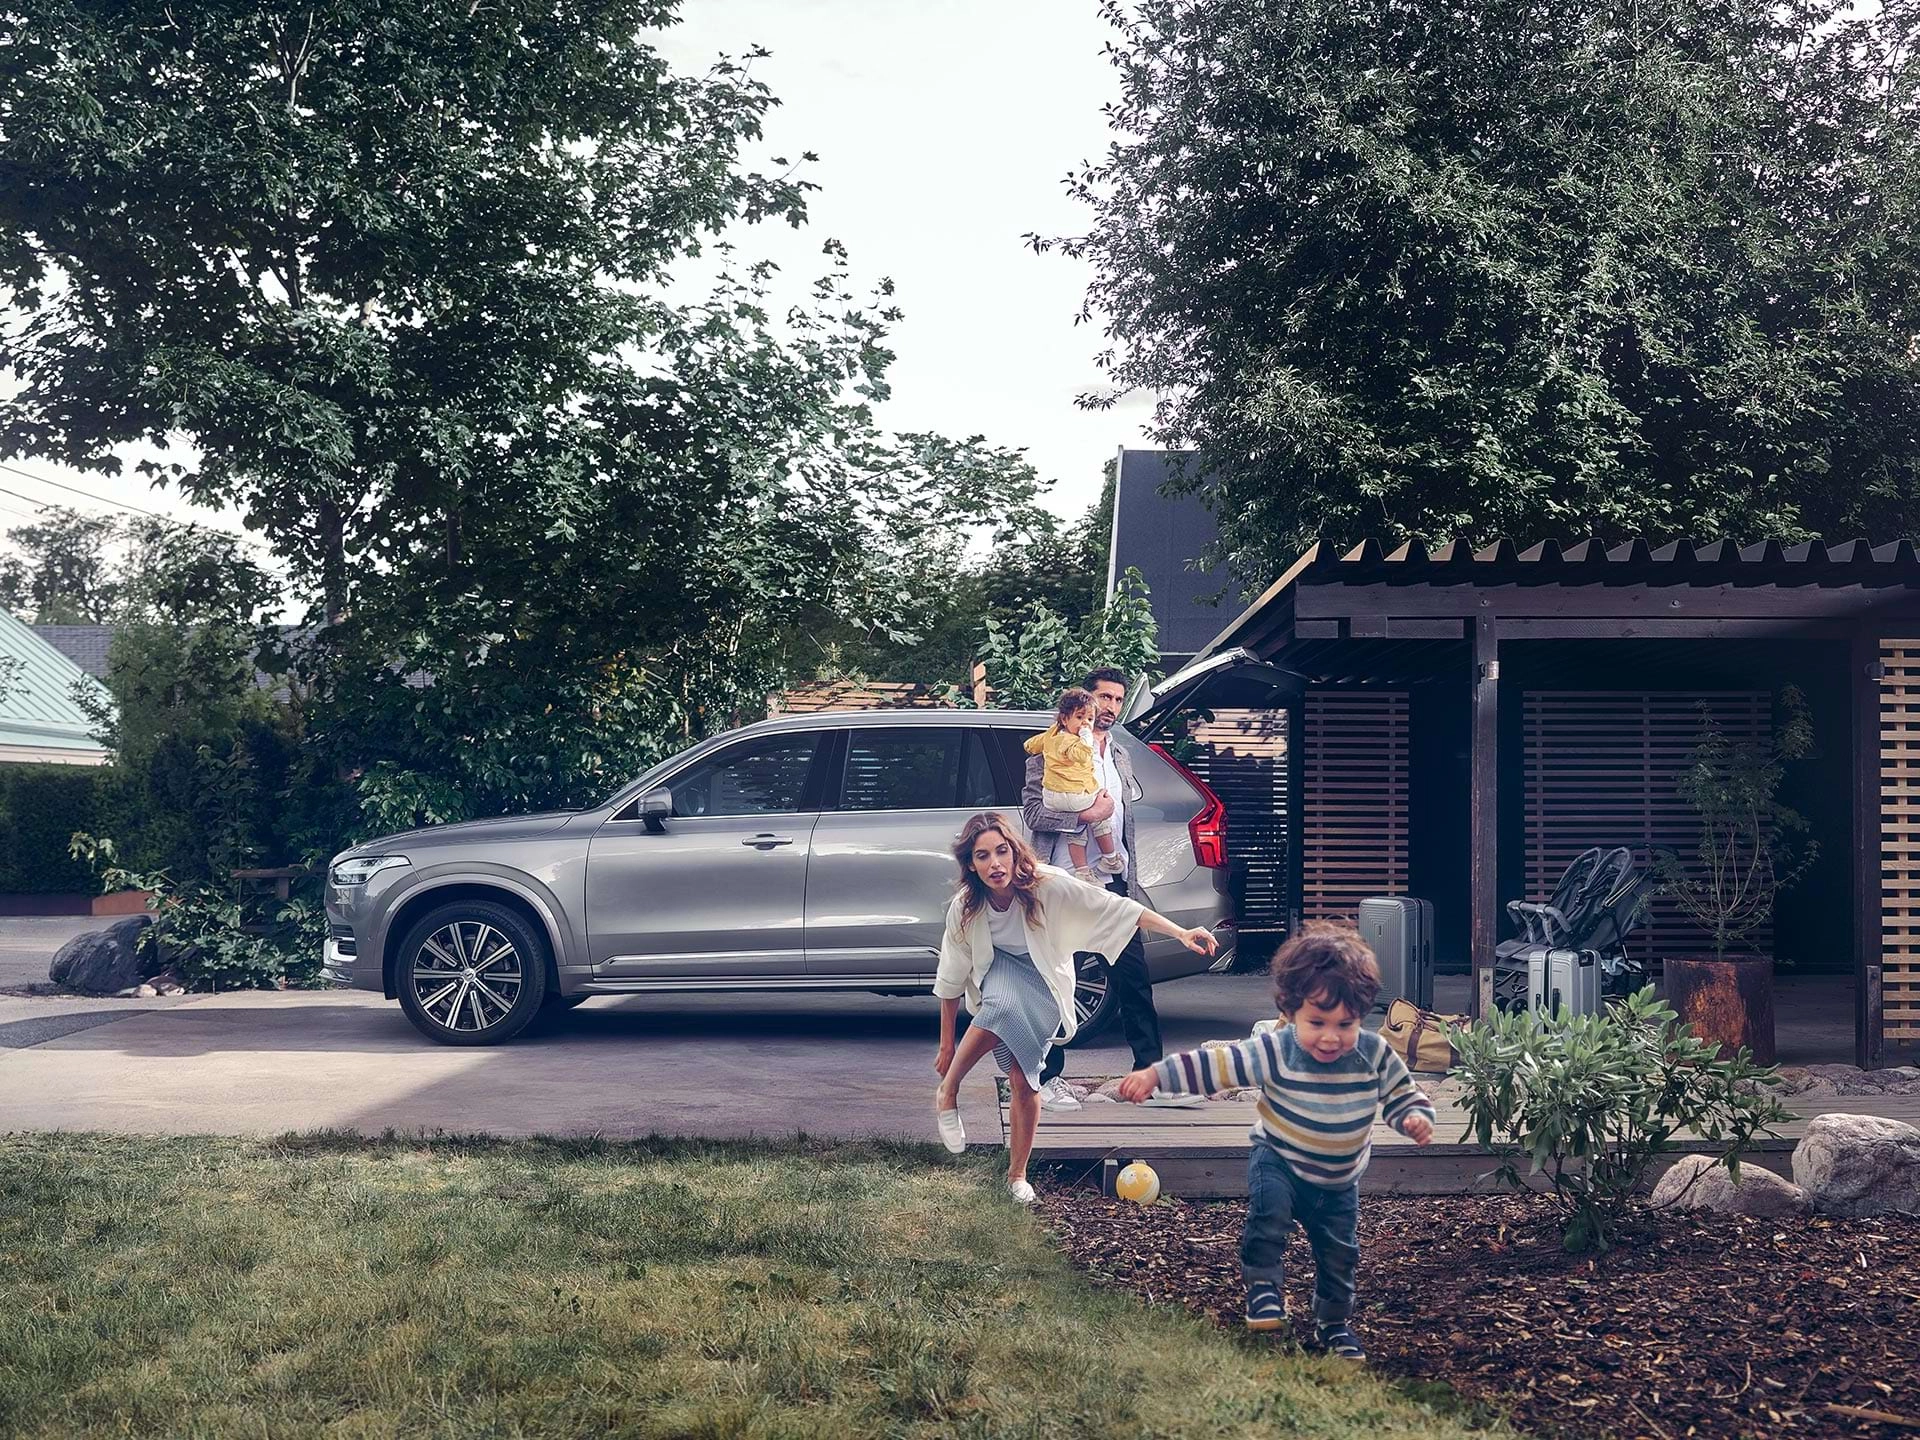 În timp ce o familie din suburbii se pregătește de călătoria în SUV-ul lor Volvo, un copil aleargă prin curte, urmărit de mama sa.